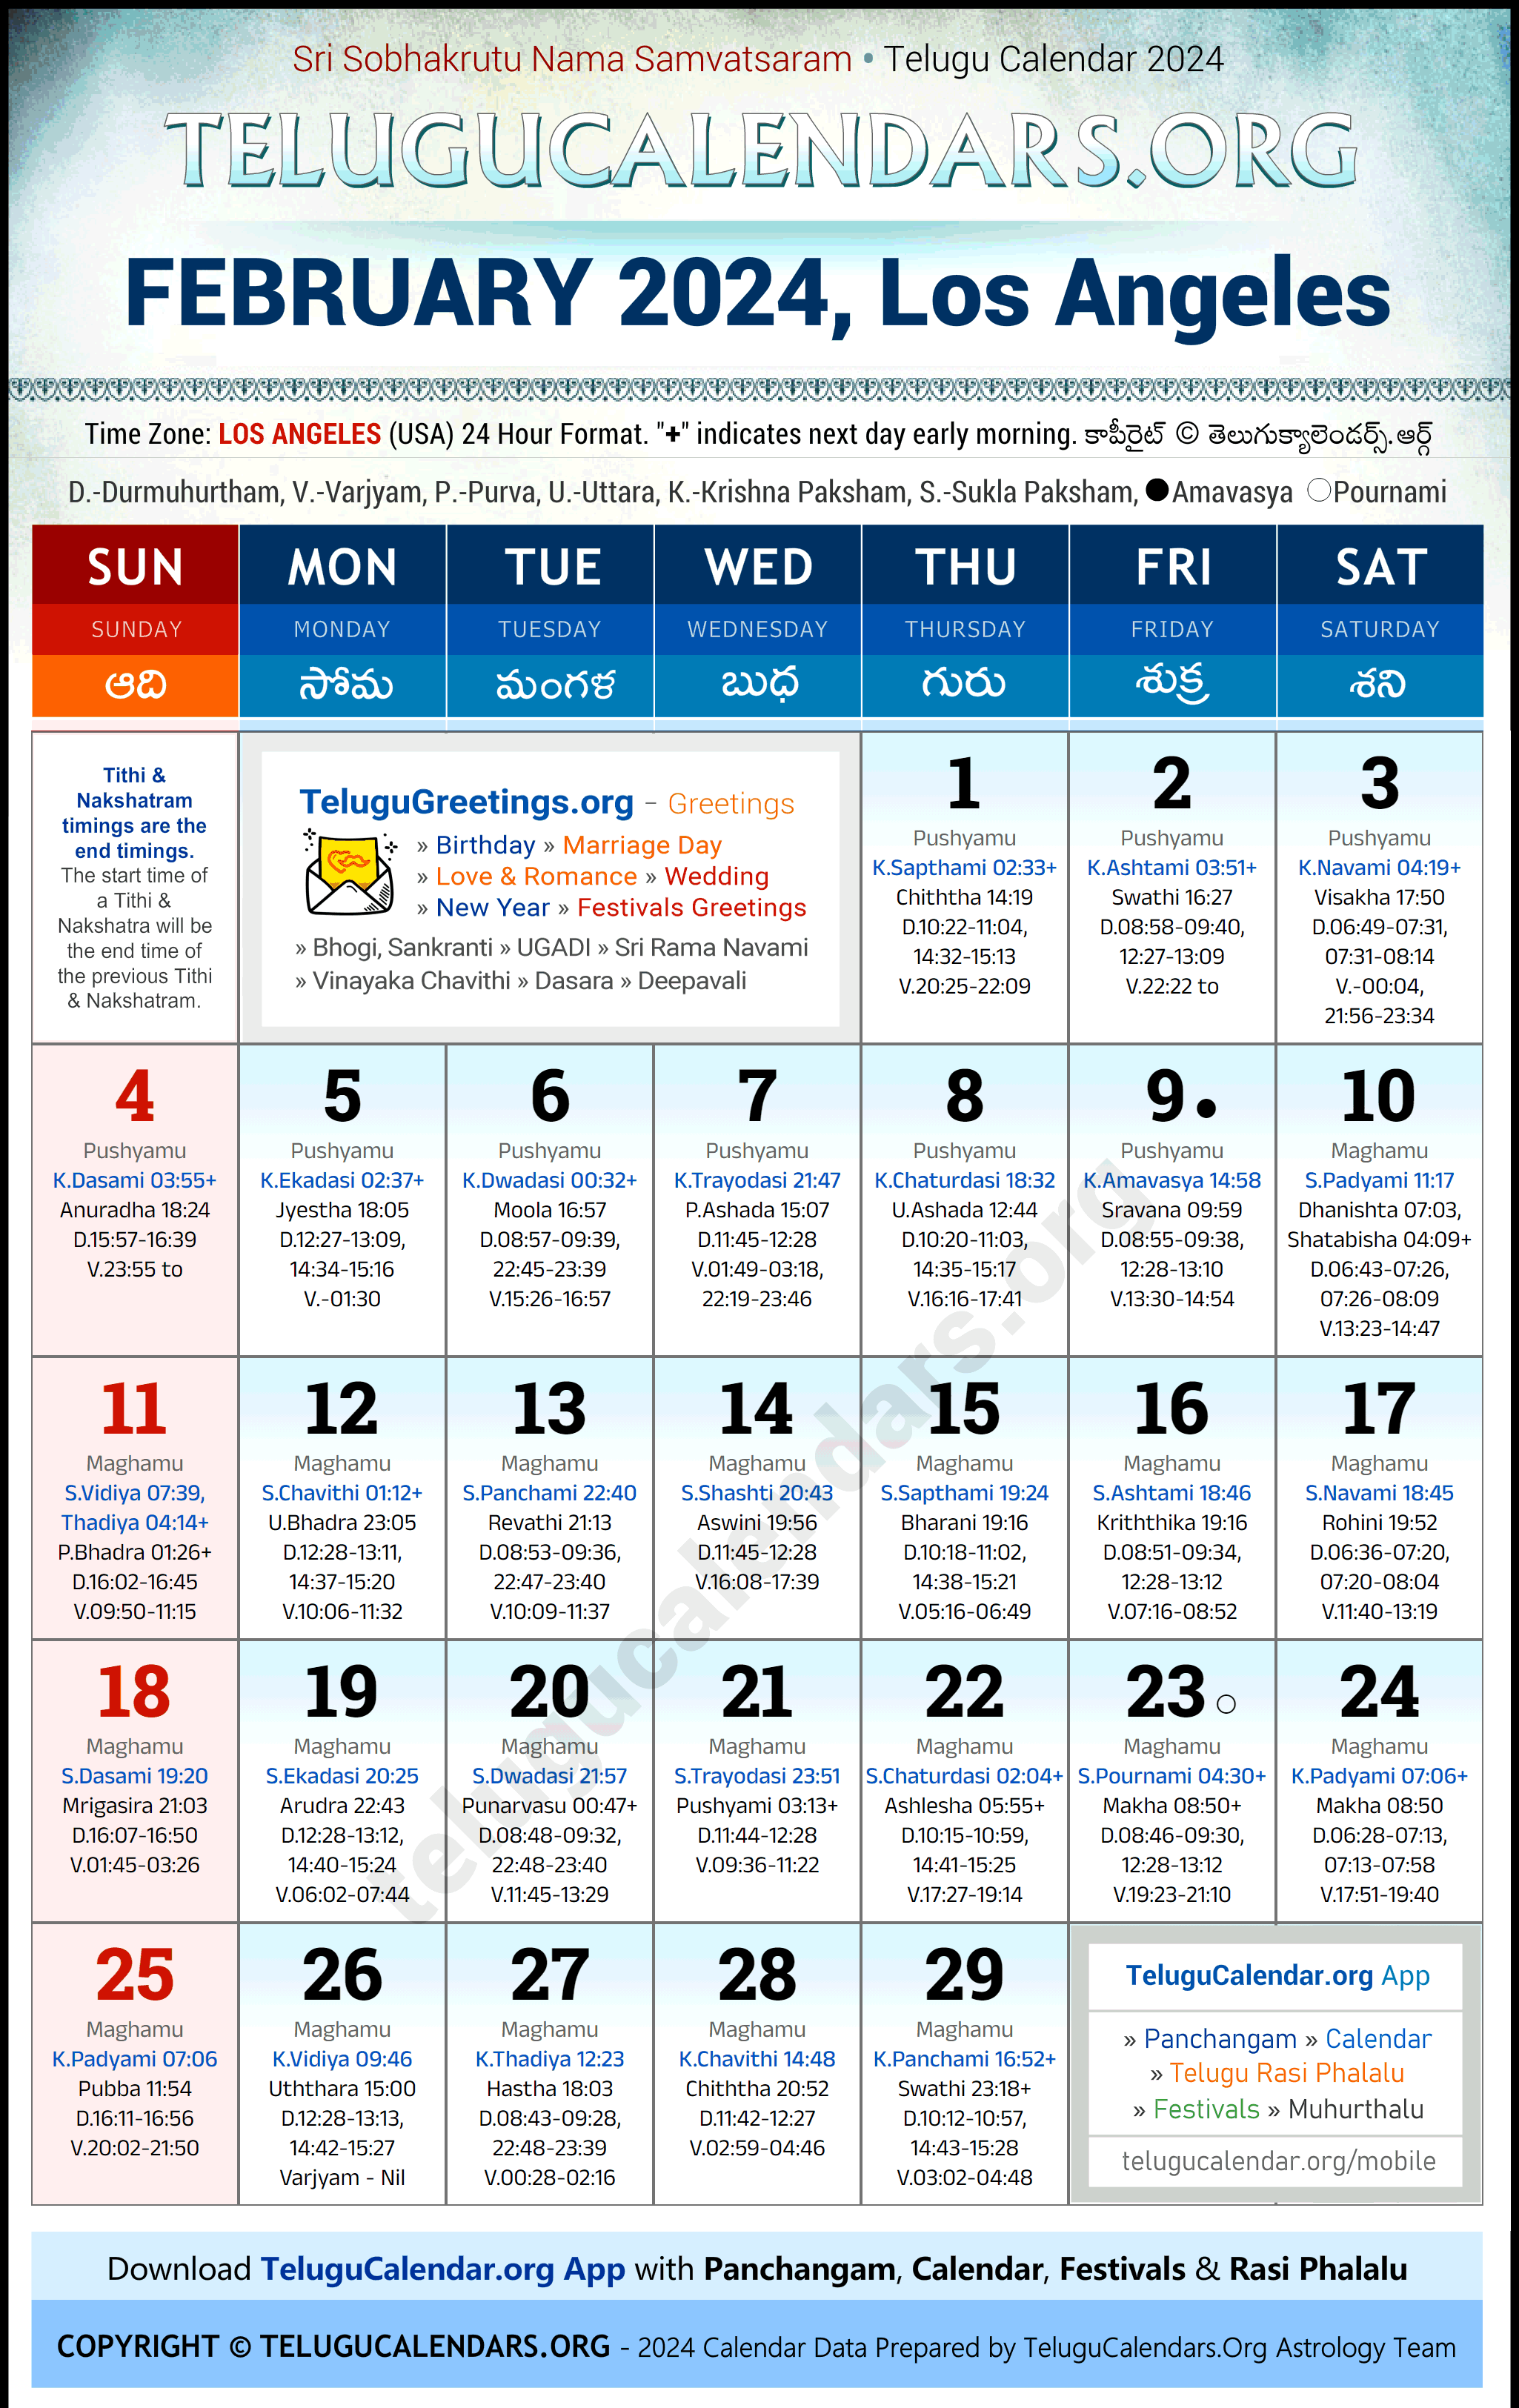 Telugu Calendar 2024 February Festivals for Los Angeles